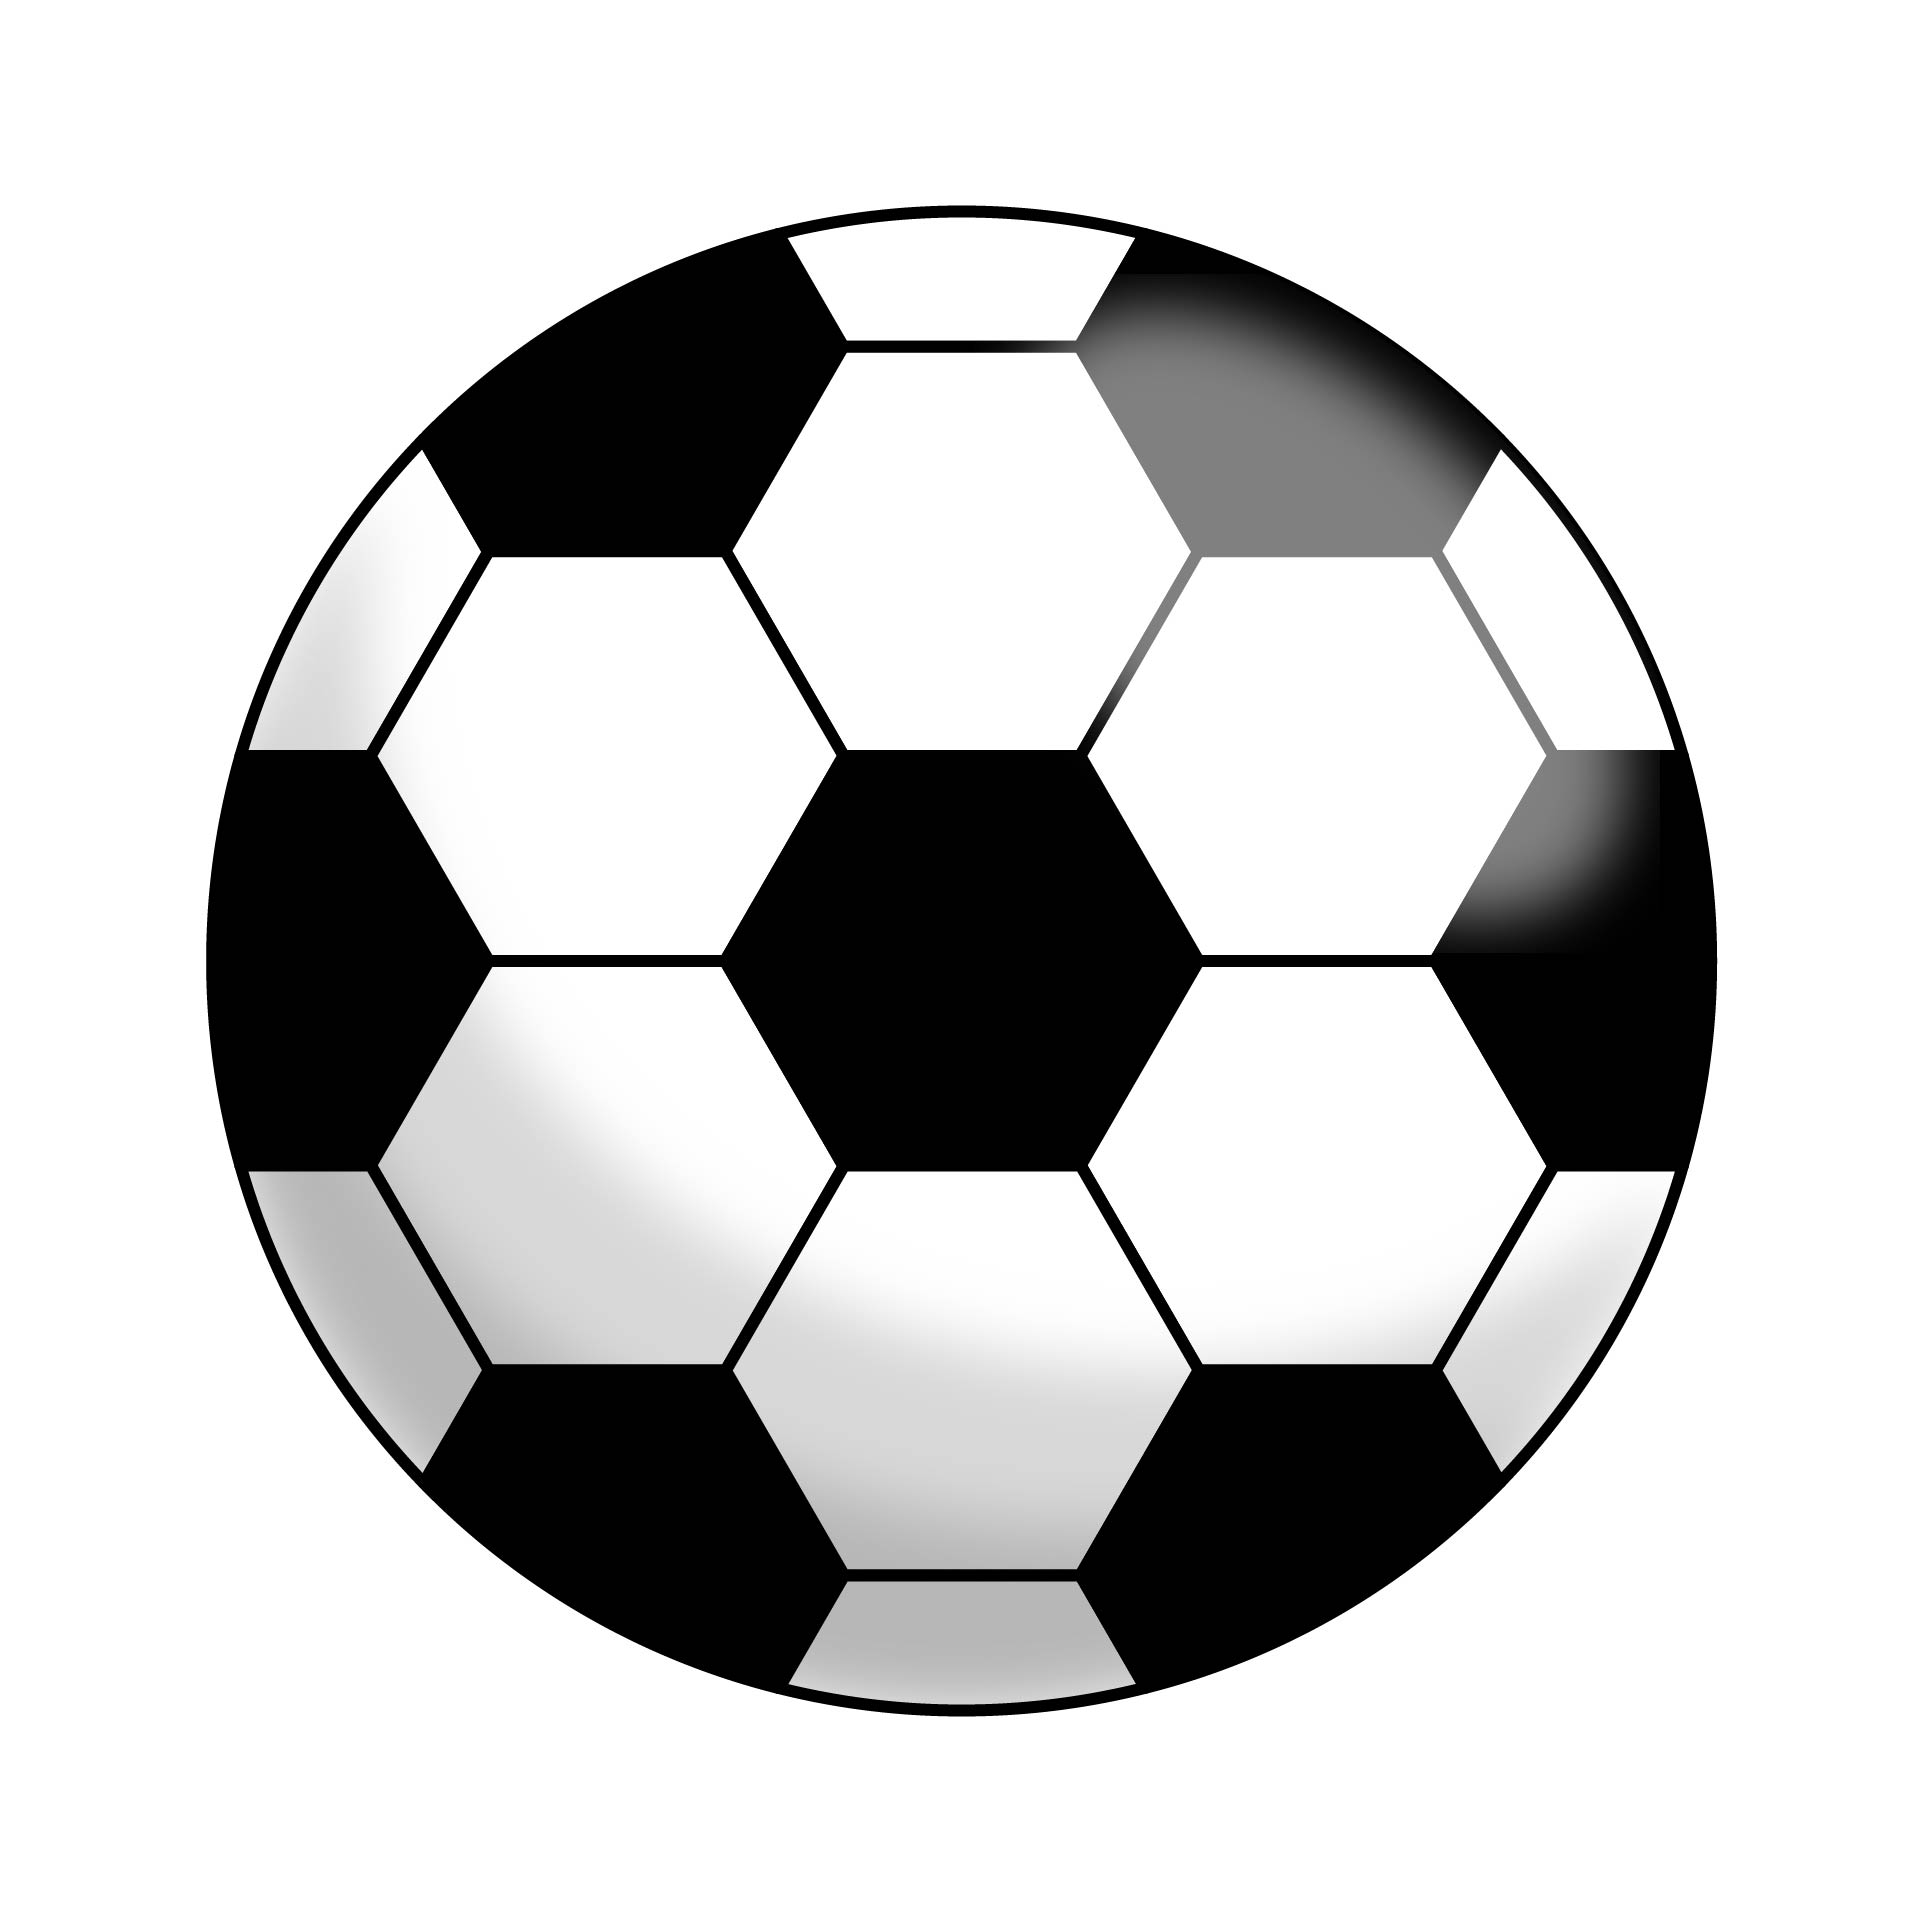 10 Best Printable Soccer Ball Pattern